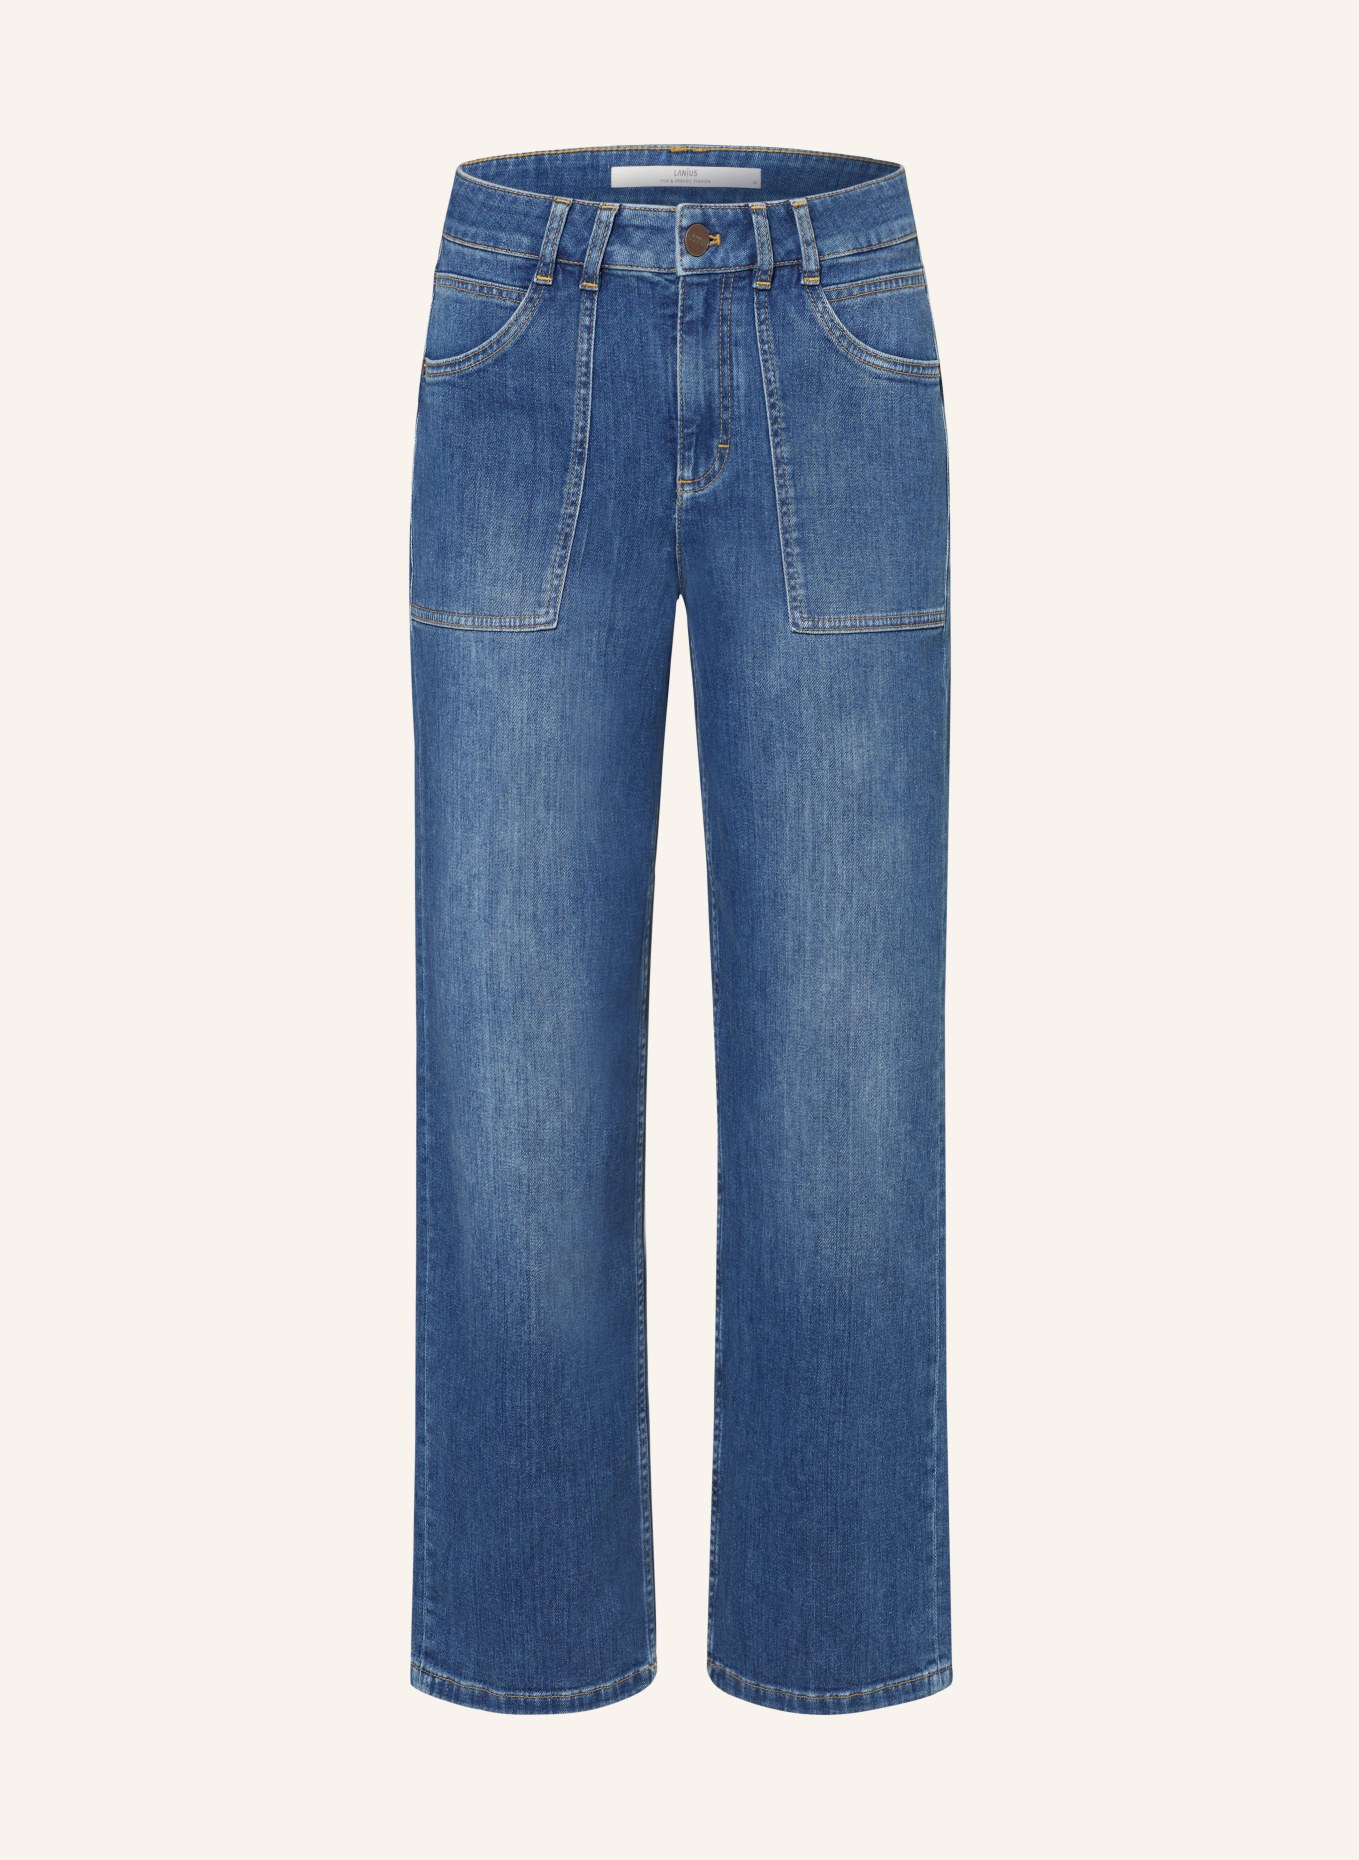 LANIUS Culotte jeans, Color: 577 mid blue denim (Image 1)